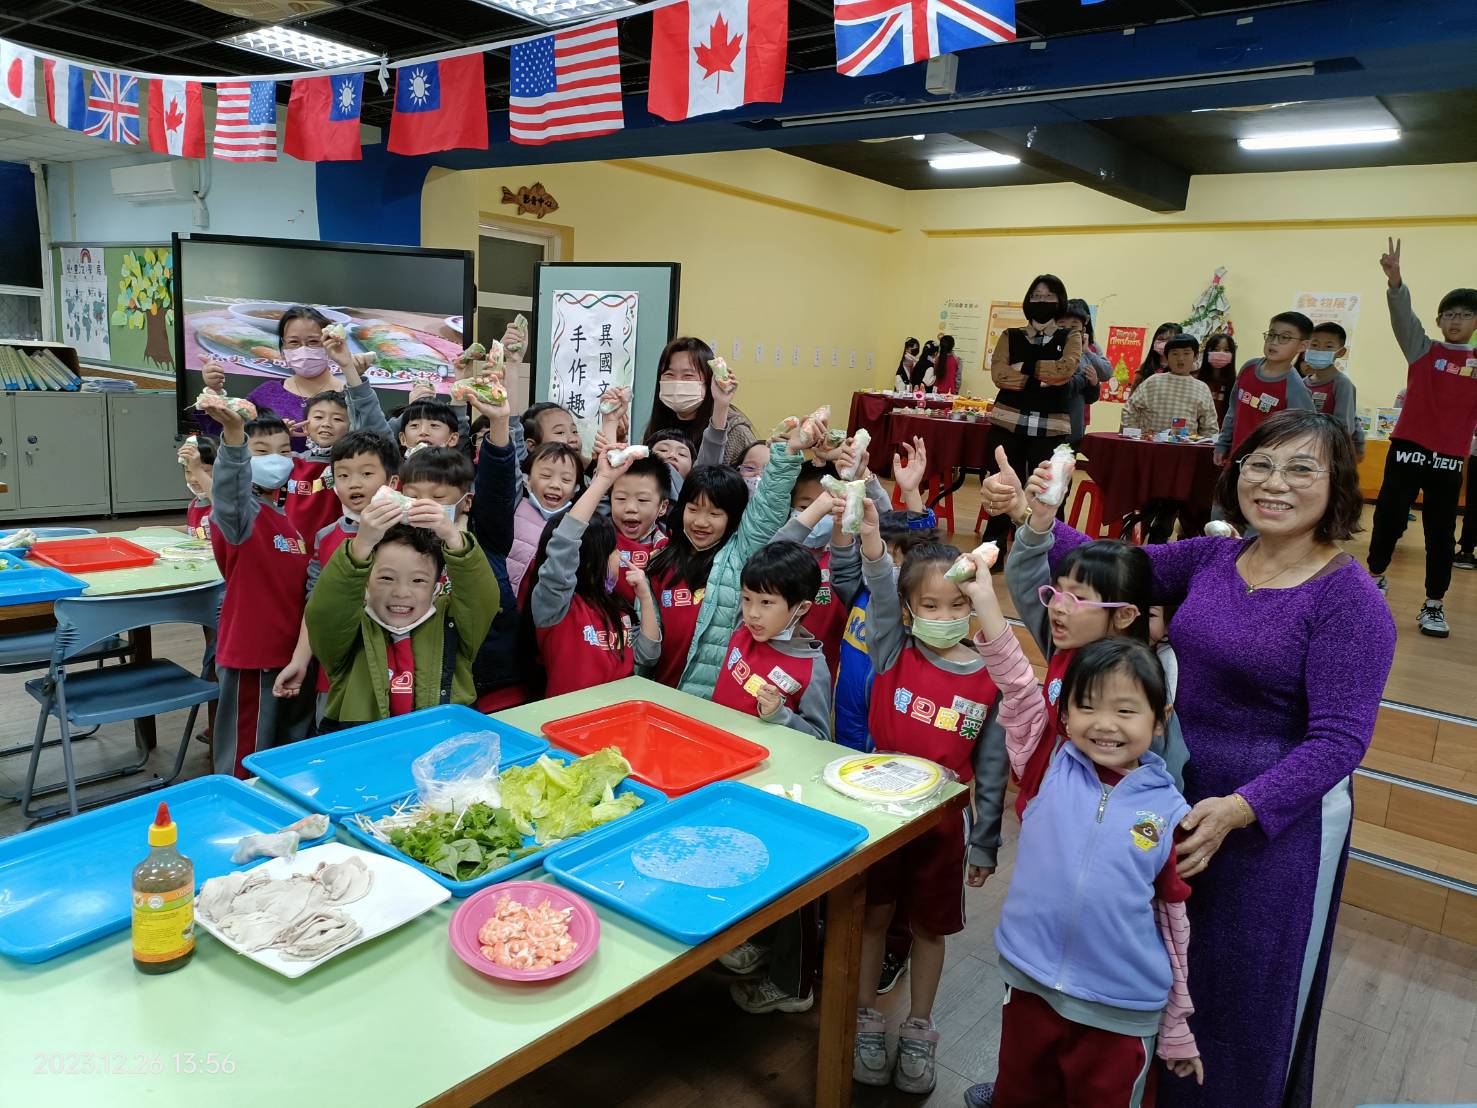 桃園復旦國小文學美食饗宴 讓學童認識異國文化成為小小地球村民